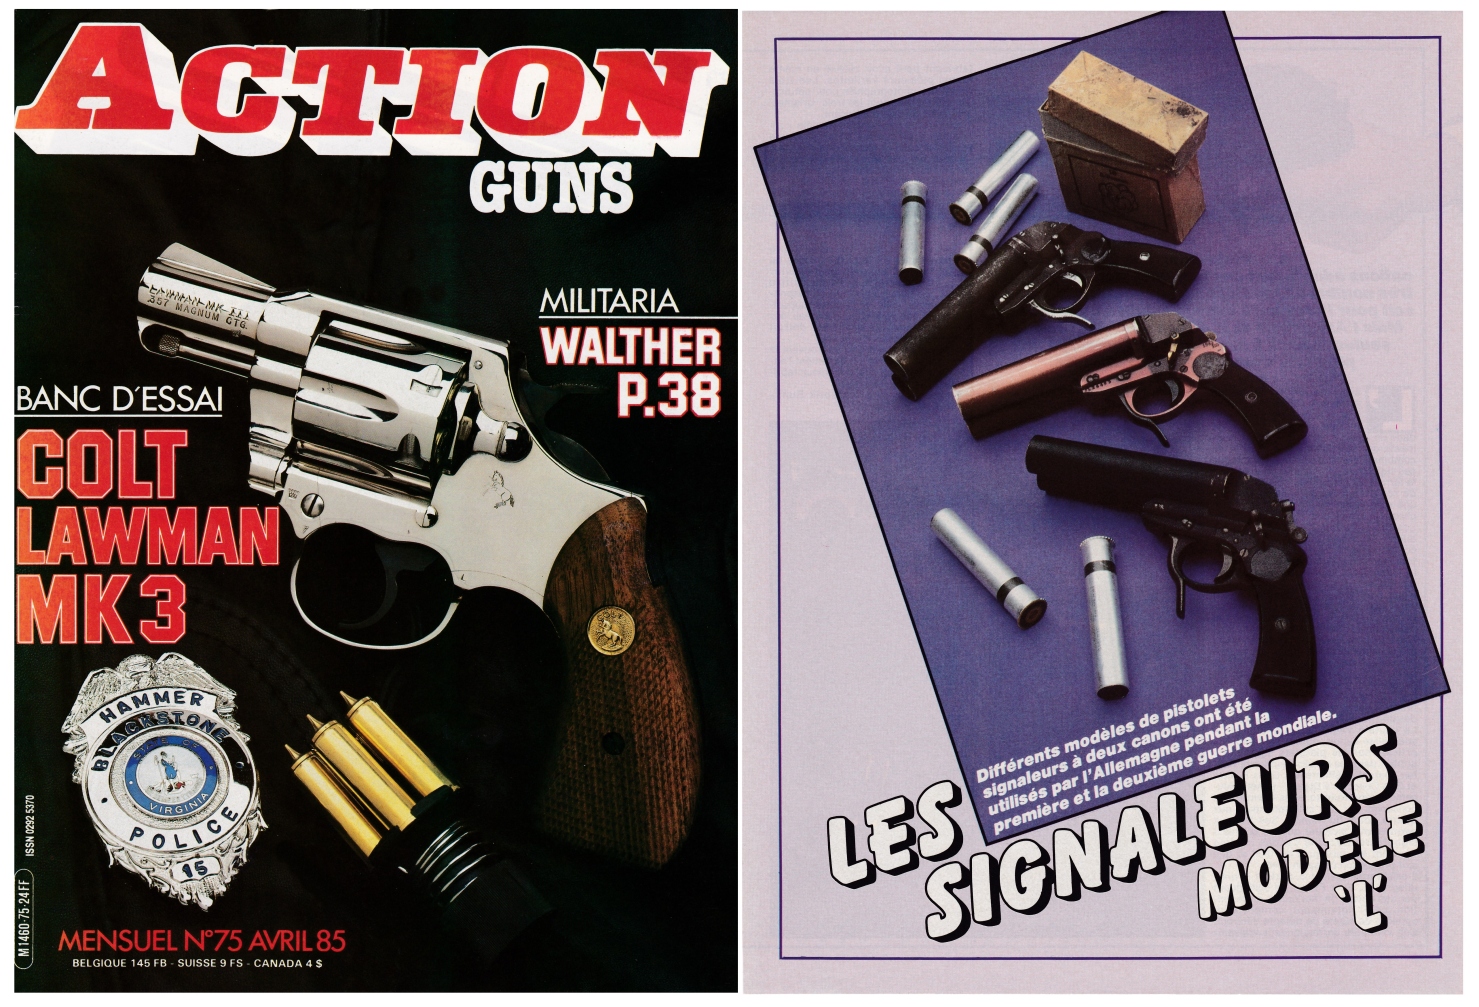 Les pistolets signaleurs allemands modèle « L » ont fait l'objet d'une publication sur 4 pages dans le magazine Action Guns N°75 (avril 1985).